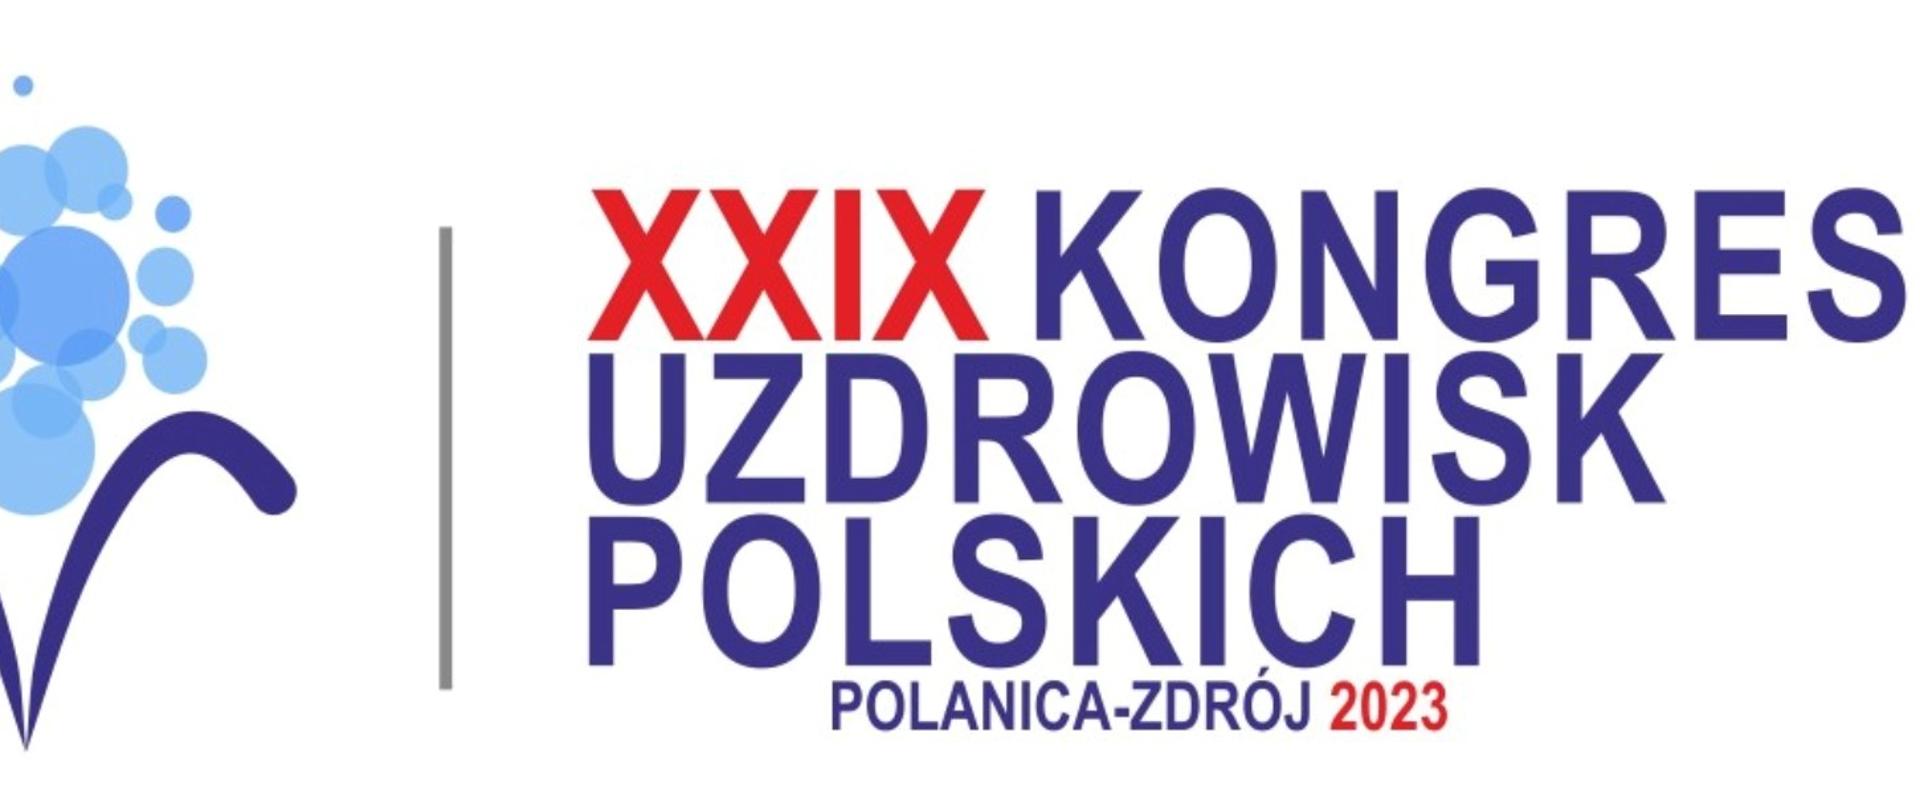 Grafika ilustracyjna informująca o XXIX Kongresie Uzdrowisk Polskich